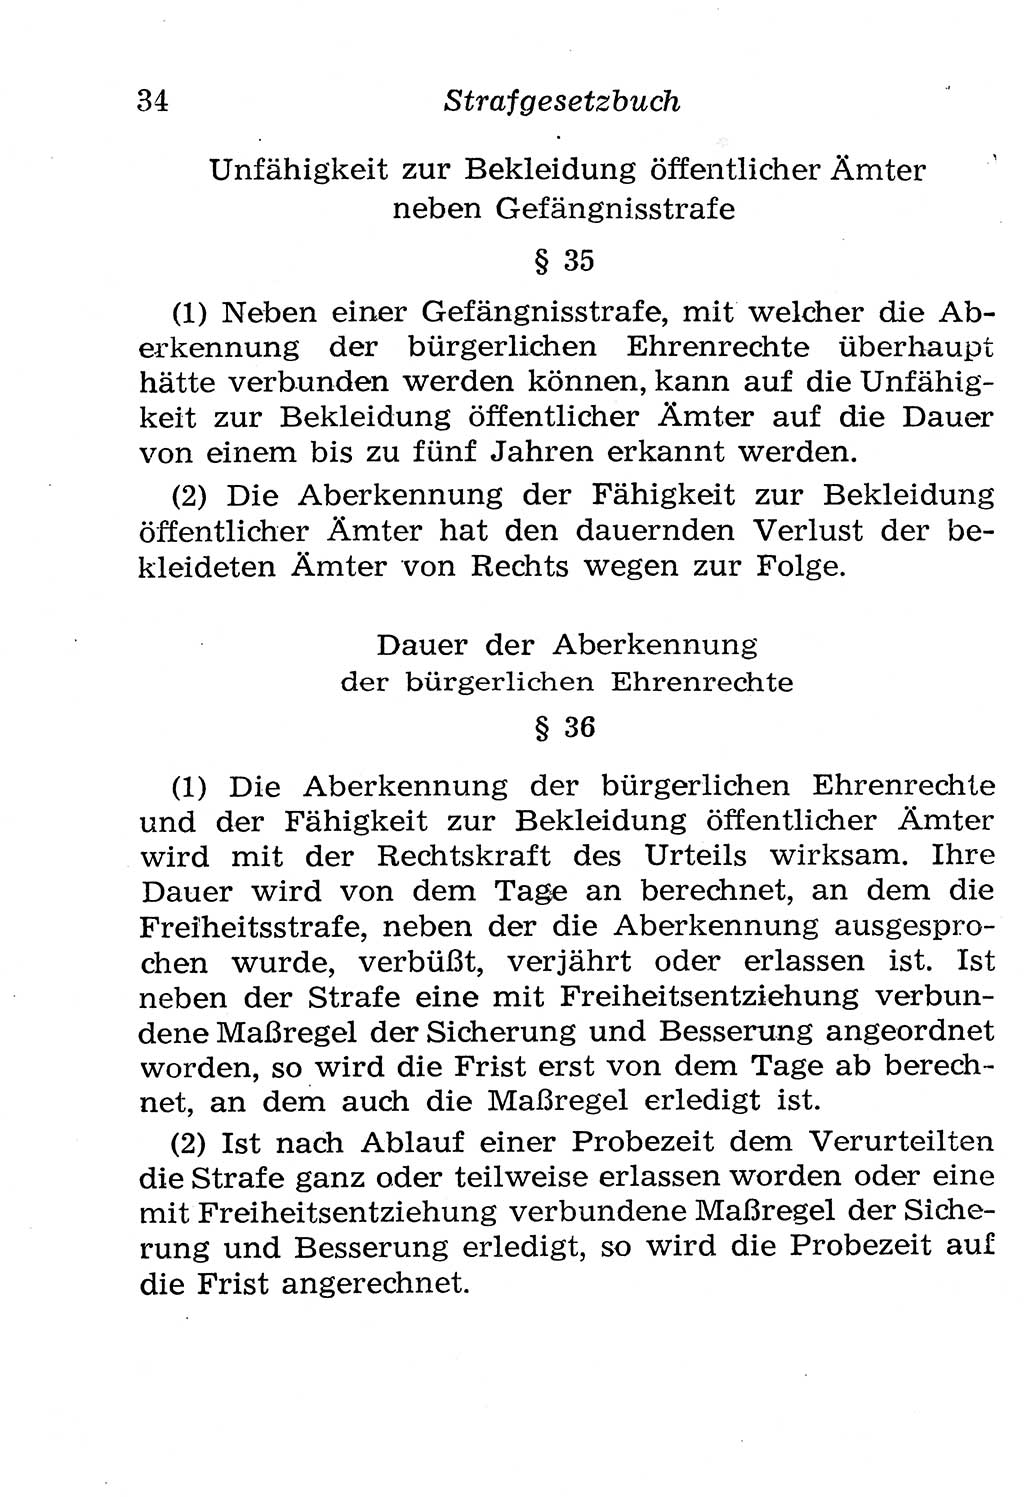 Strafgesetzbuch (StGB) und andere Strafgesetze [Deutsche Demokratische Republik (DDR)] 1958, Seite 34 (StGB Strafges. DDR 1958, S. 34)